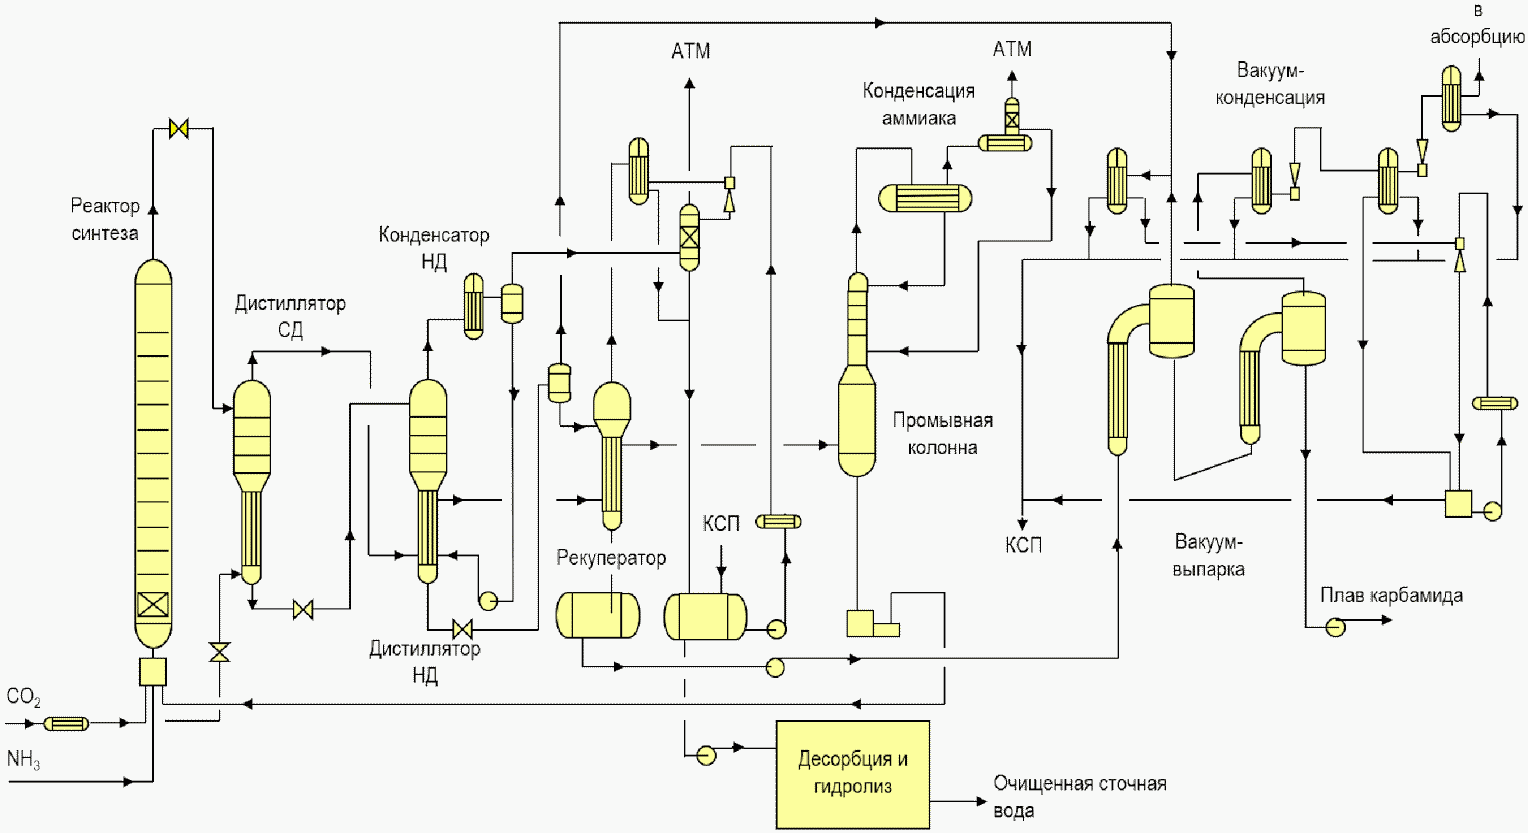 Производство карбамида технологическая схема